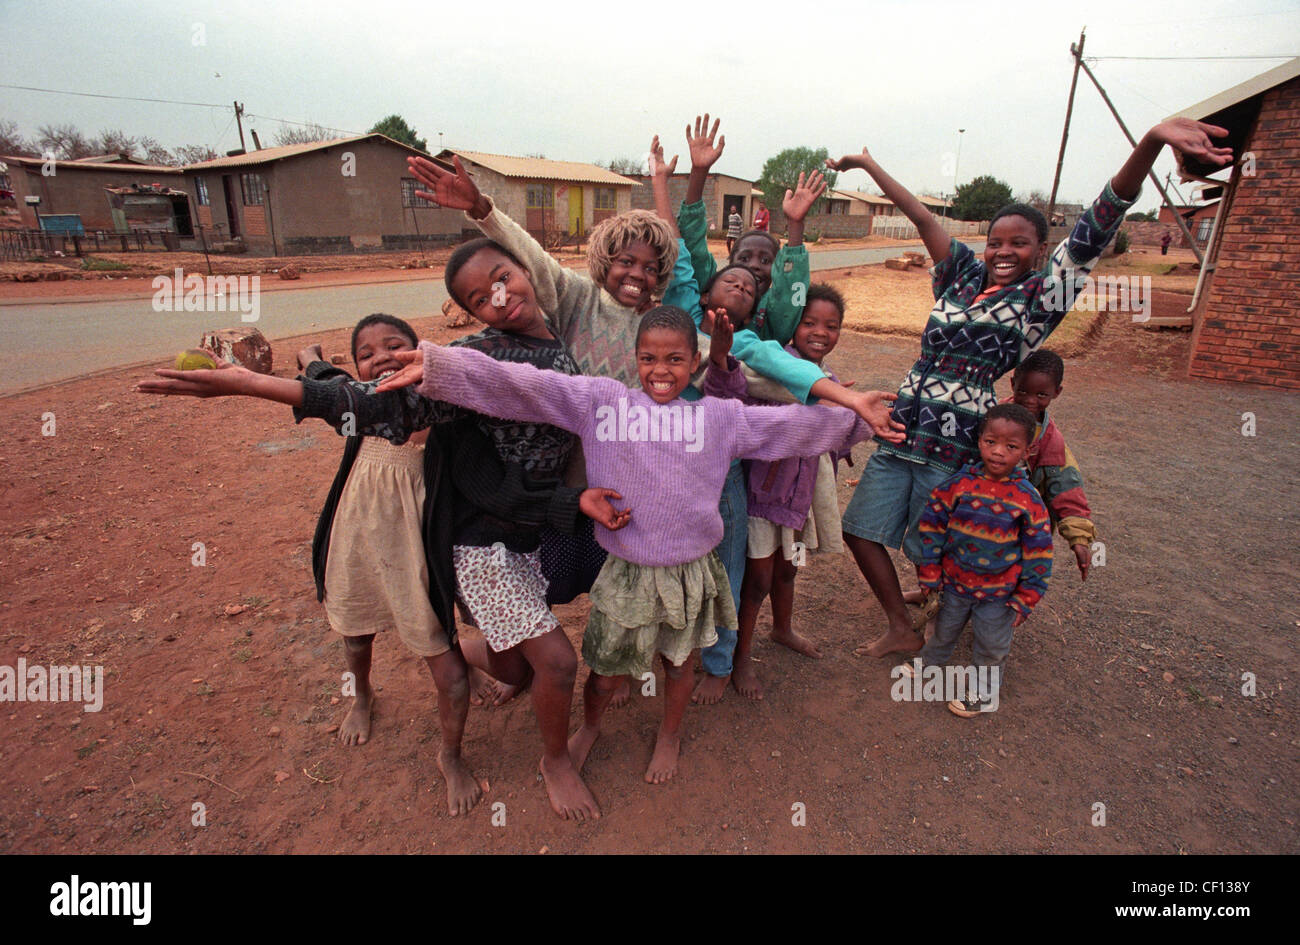 Le Canton de Barefoot kids, l'un portant une perruque de Marilyn Monroe, donner une chaleureuse bienvenue à Soweto, Afrique du Sud en 1996 Banque D'Images